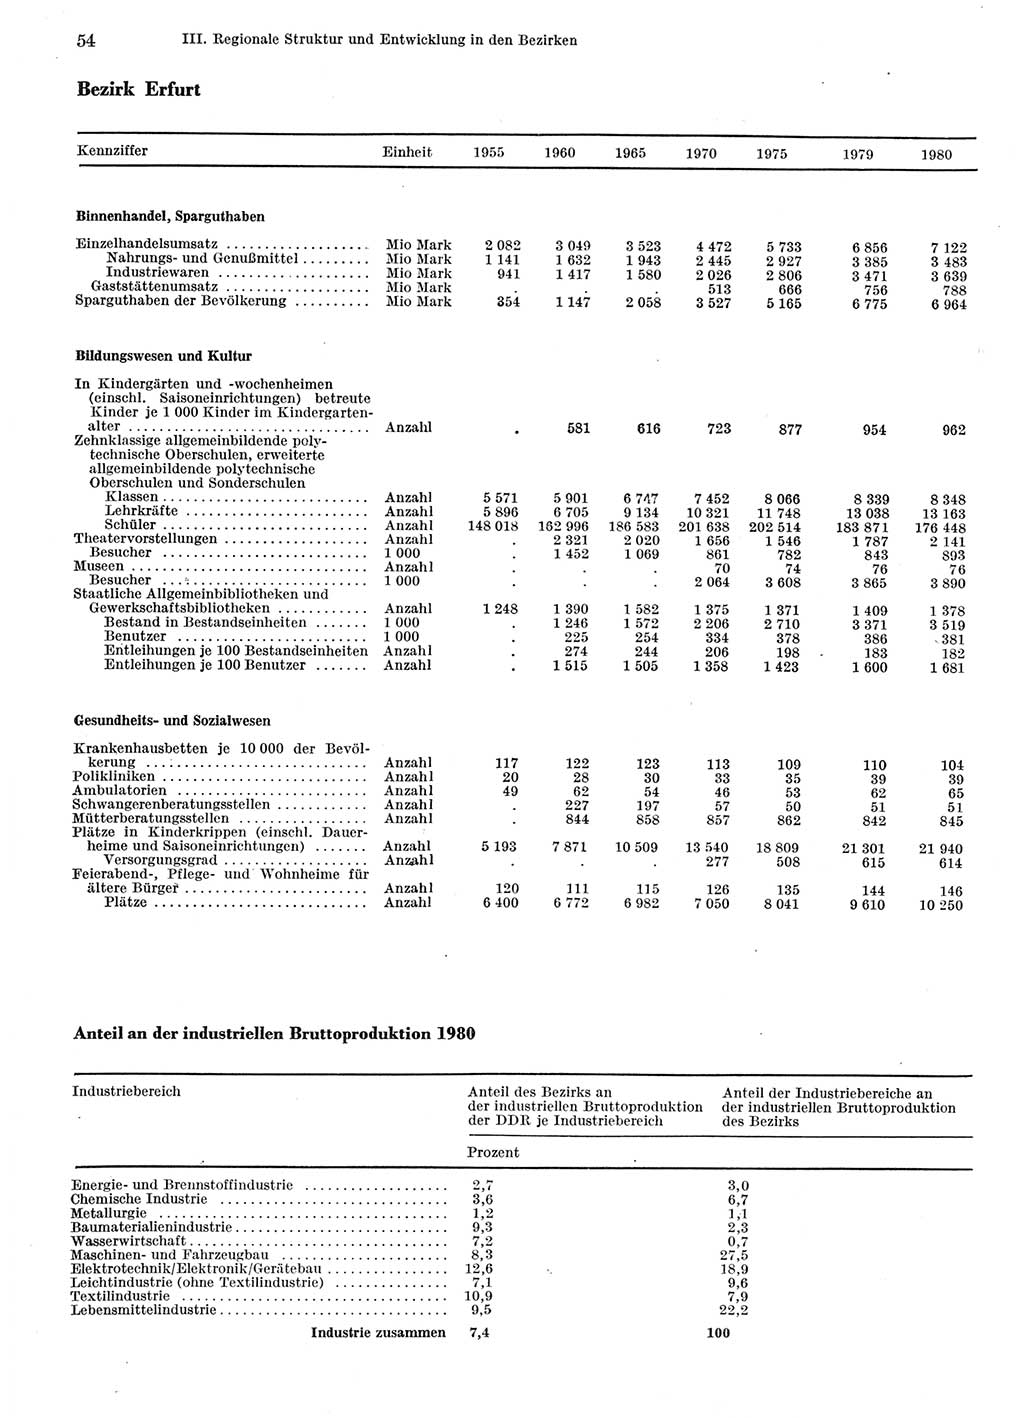 Statistisches Jahrbuch der Deutschen Demokratischen Republik (DDR) 1981, Seite 54 (Stat. Jb. DDR 1981, S. 54)